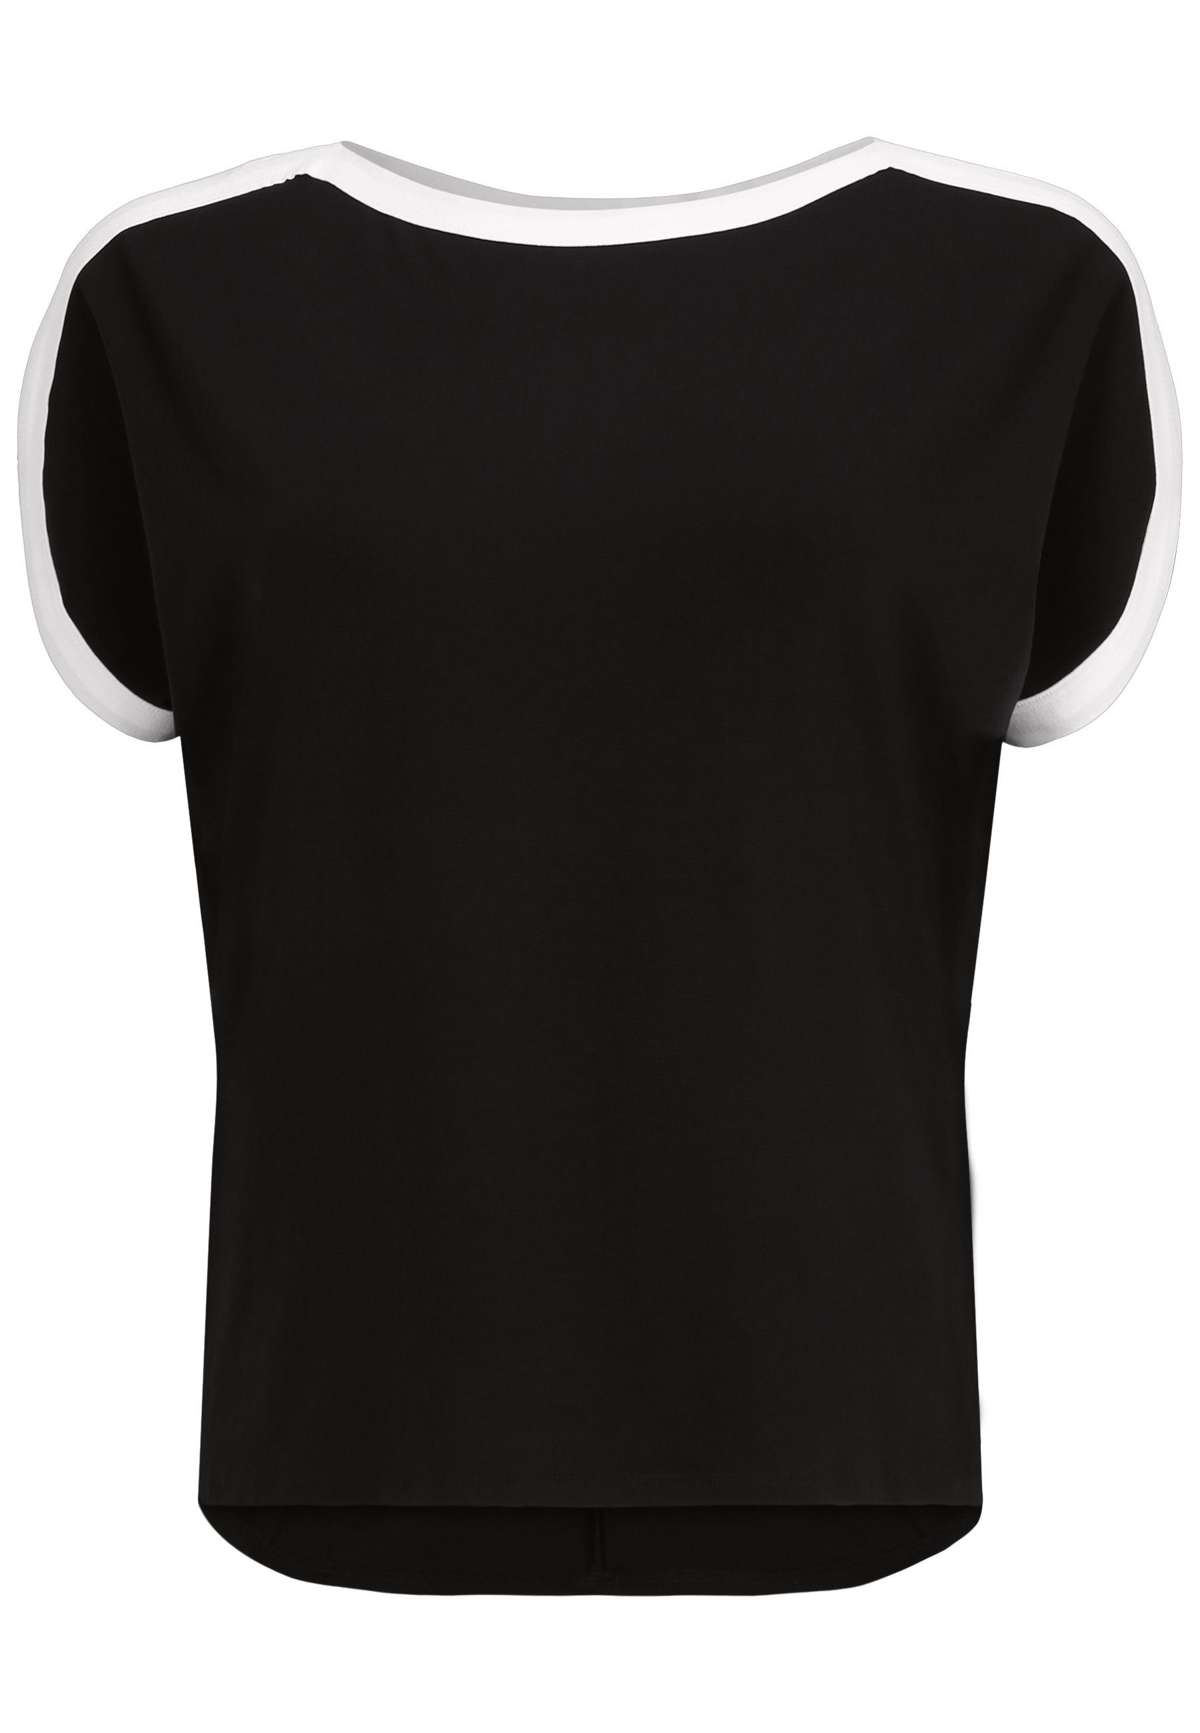 Туника длинная рубашка с контрастной окантовкой и контрастной обработкой